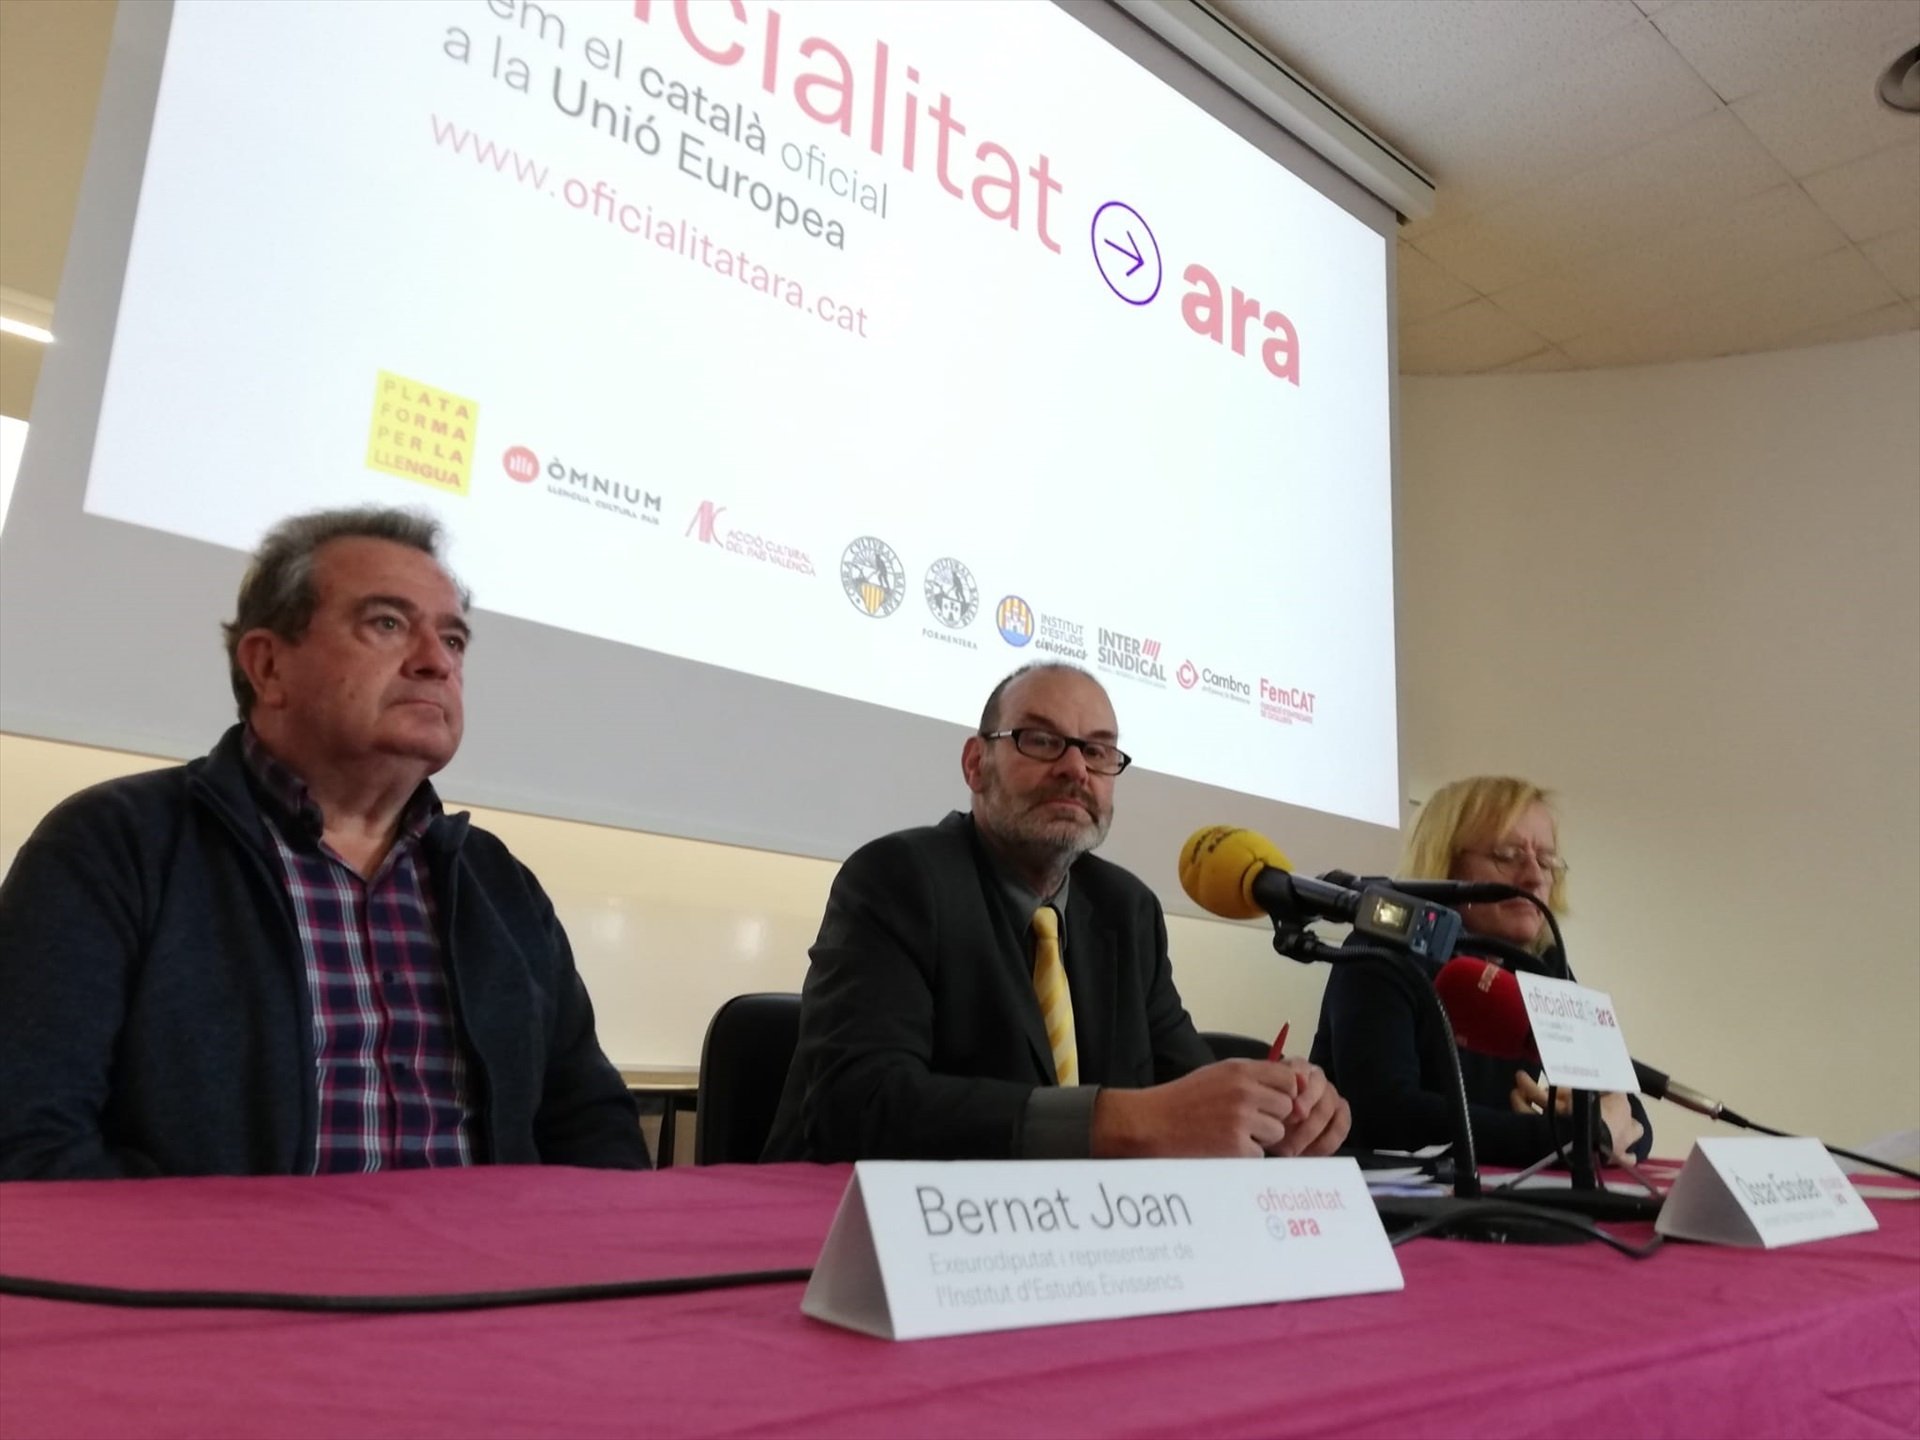 Impulsen un manifest per fer el català oficial a la UE: "Som l'anomalia més gran d'Europa"